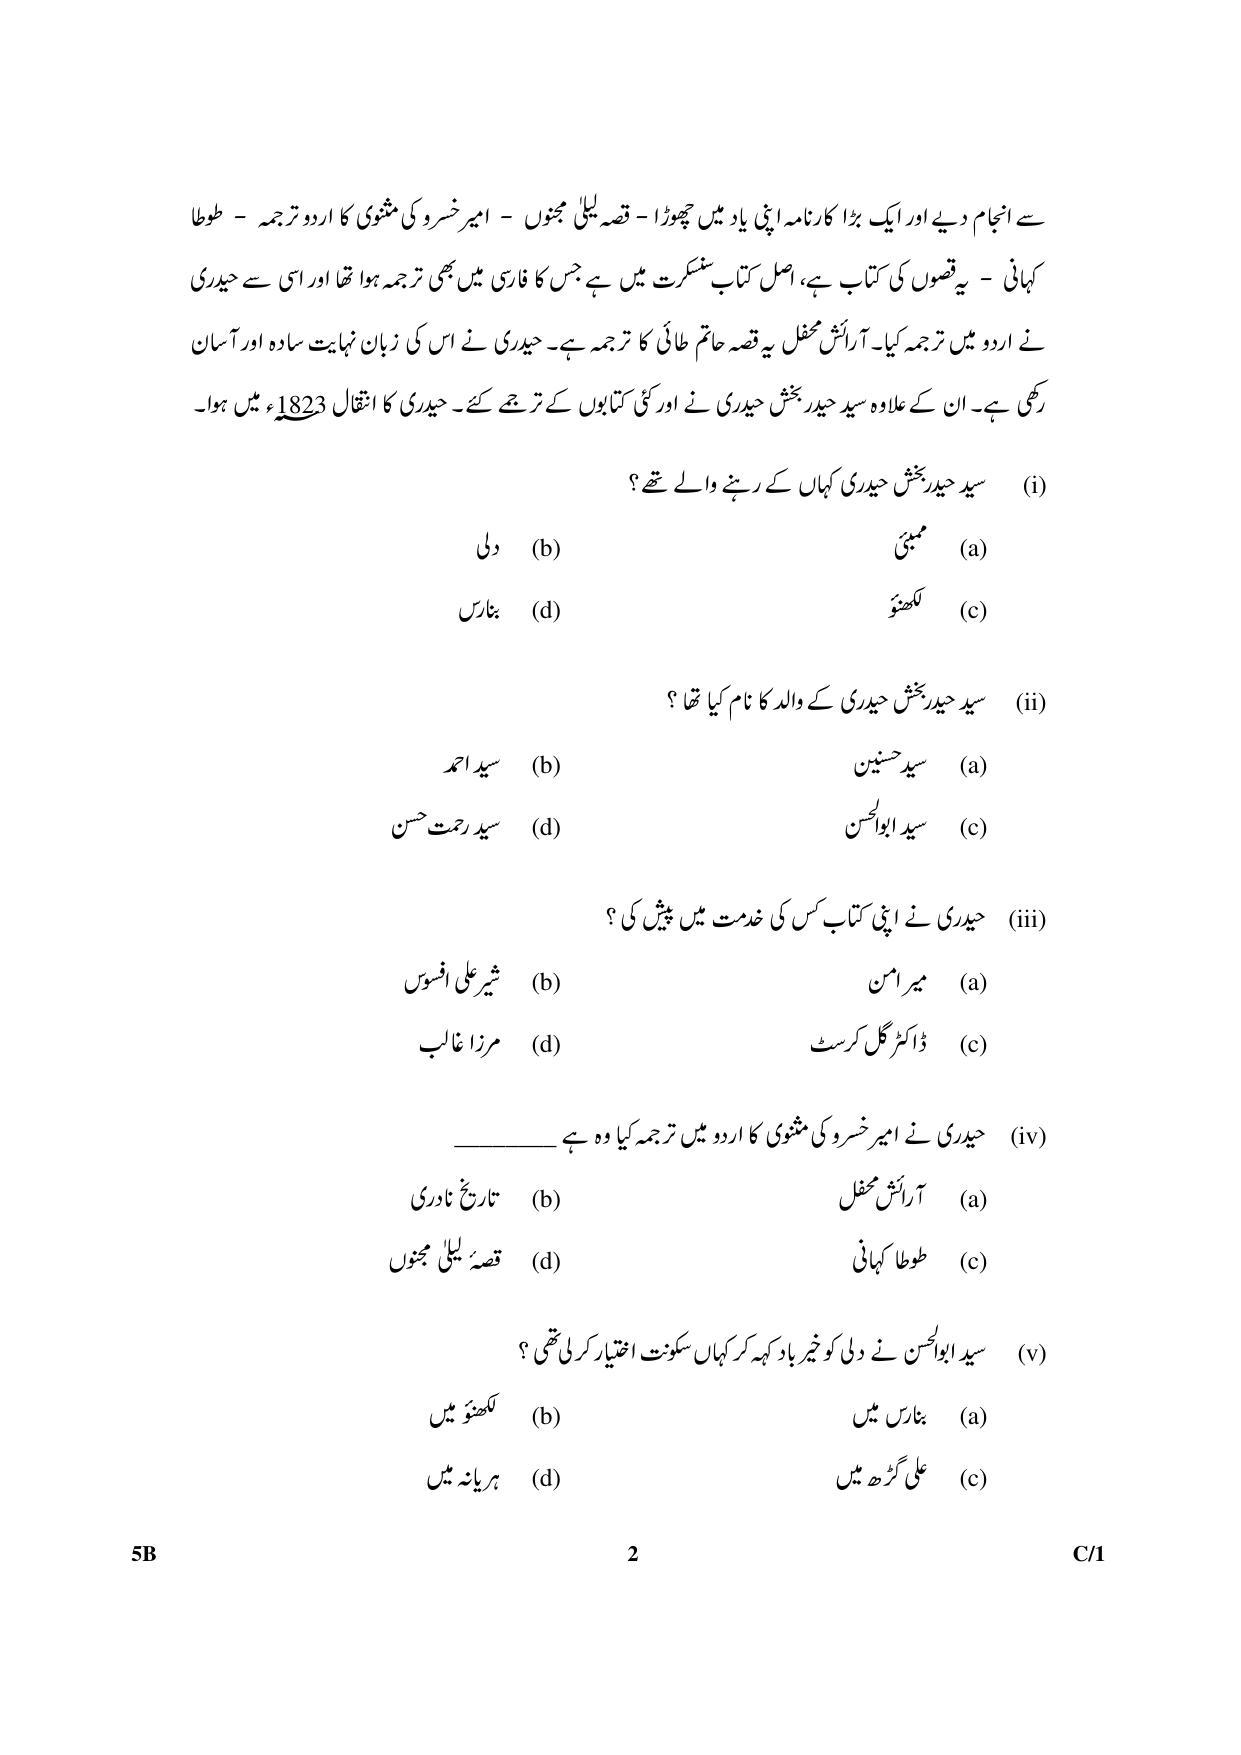 CBSE Class 10 5B Urdu (Course B) 2018 Compartment Question Paper - Page 2